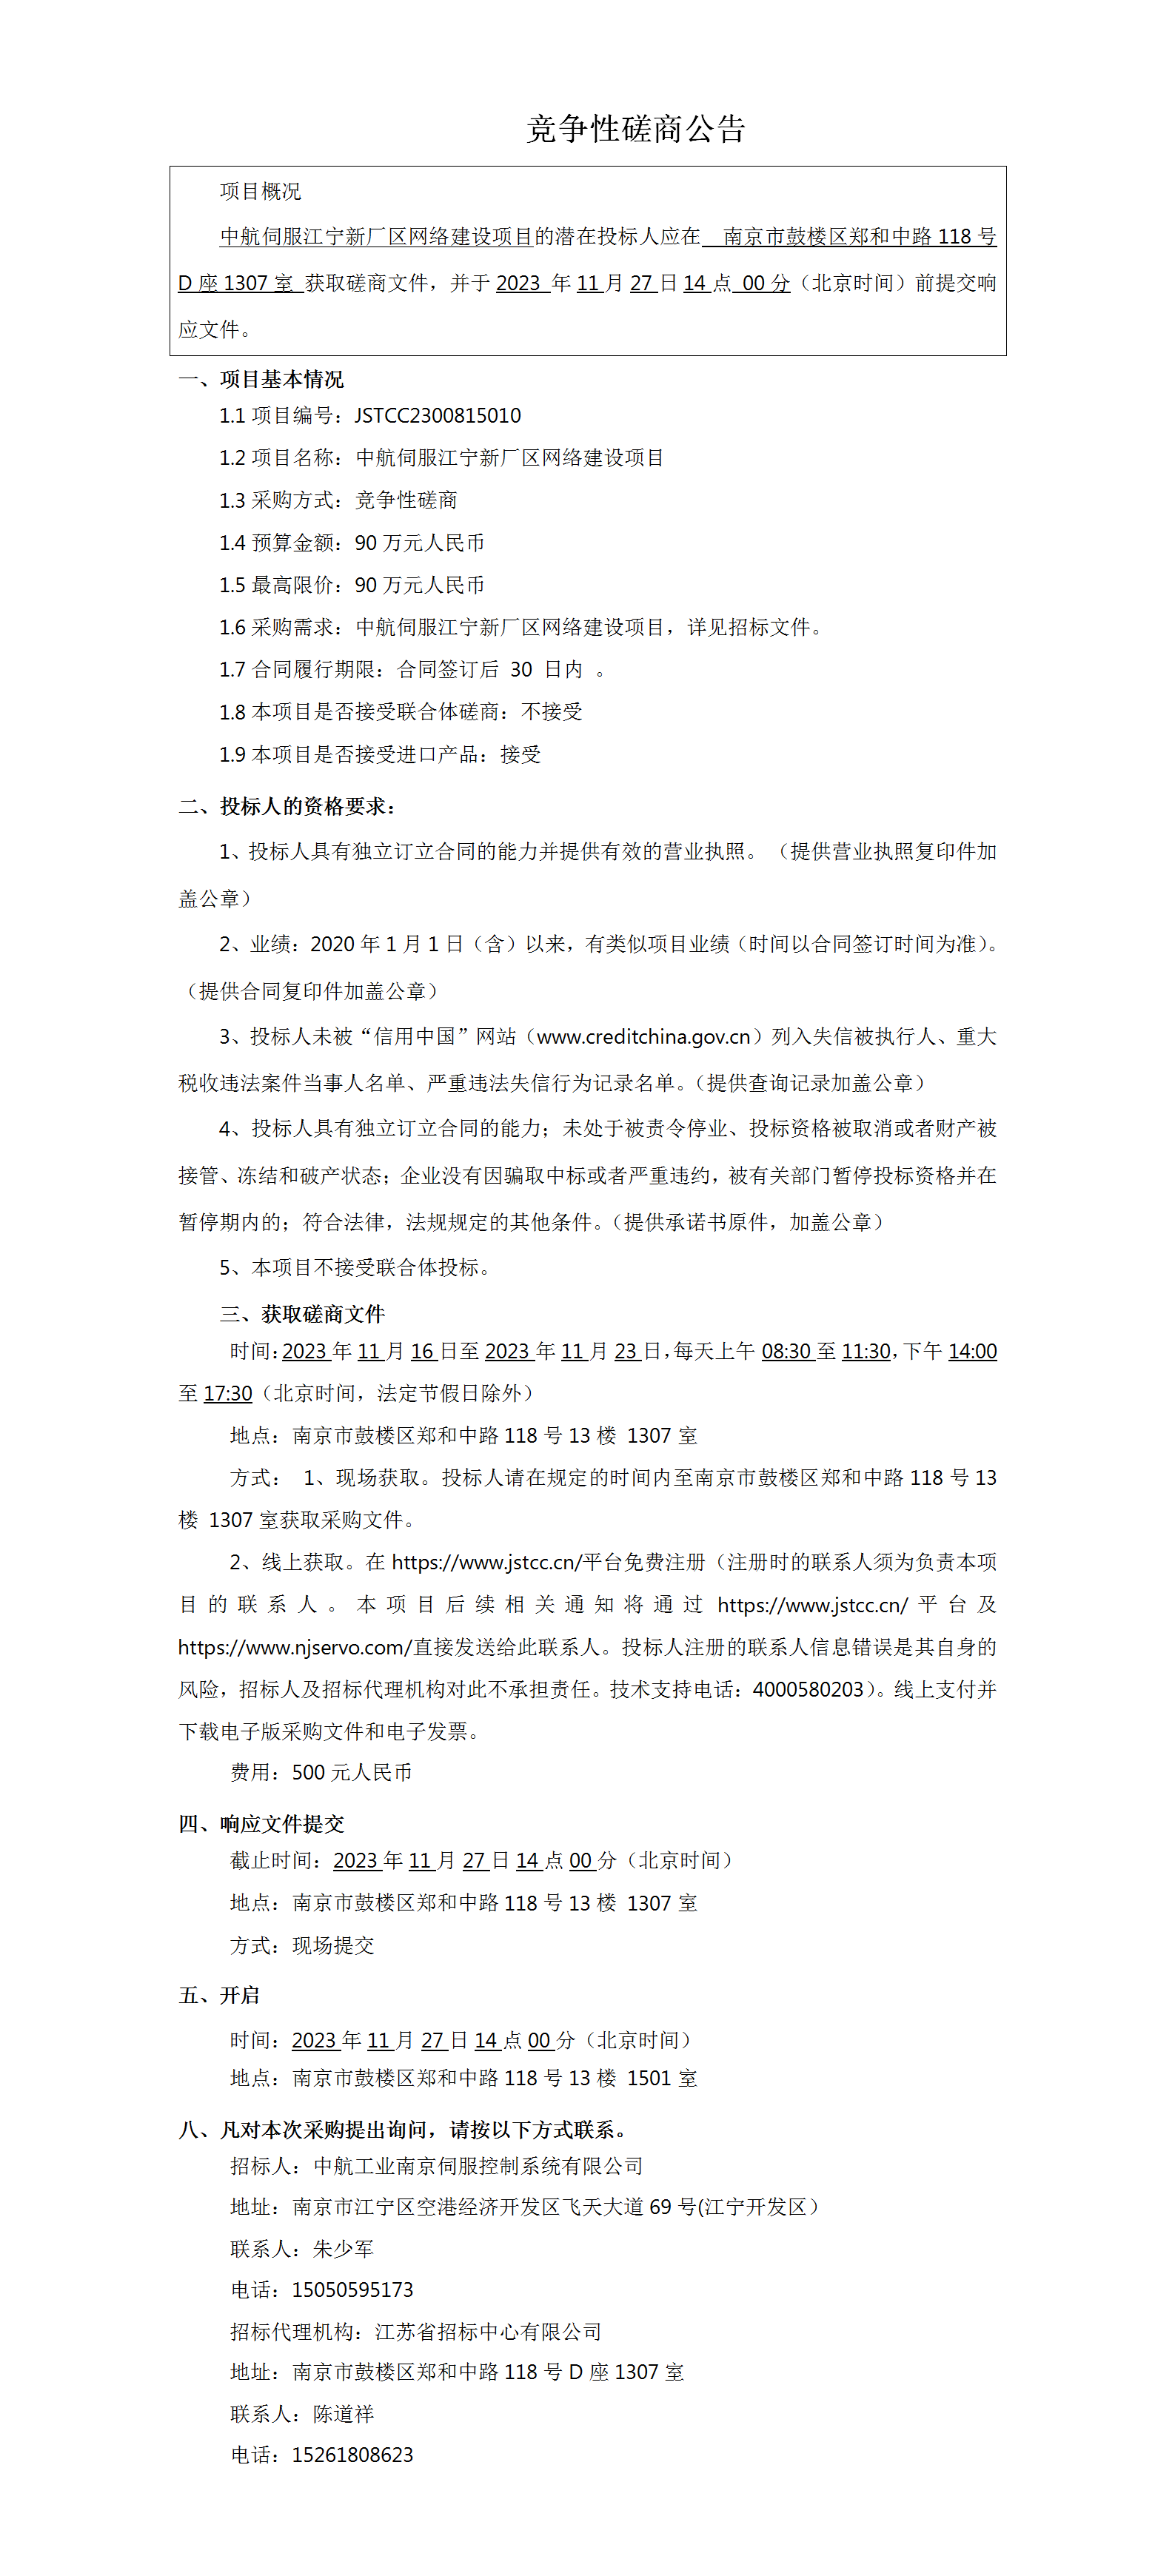 中航伺服江宁新厂区网络建设项目竞争性磋商公告